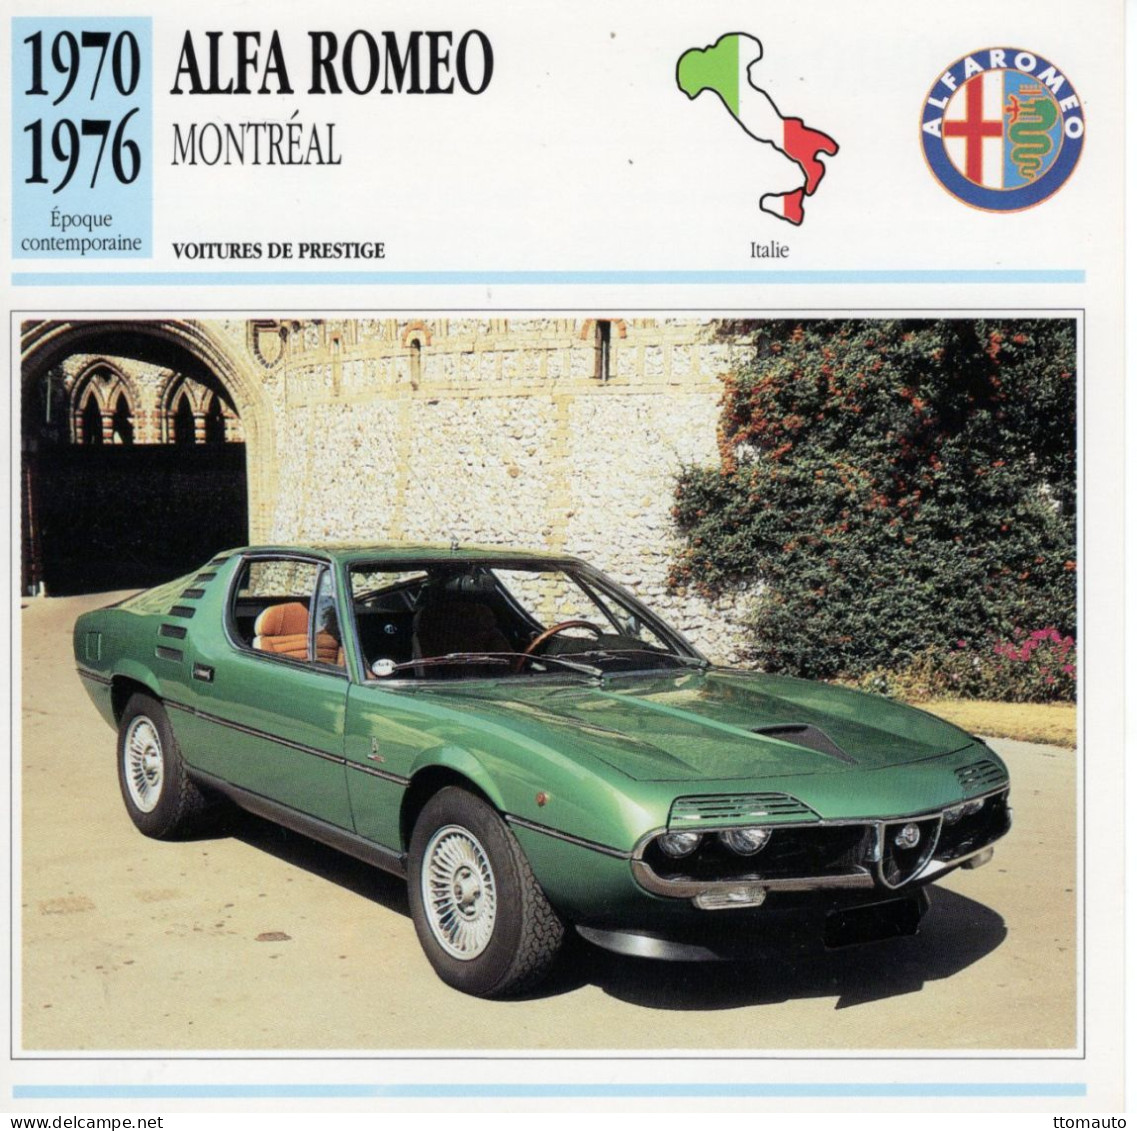 Alfa Romeo Montréal  -  1972  - Voiture De Prestige -  Fiche Technique Automobile (I) - Cars